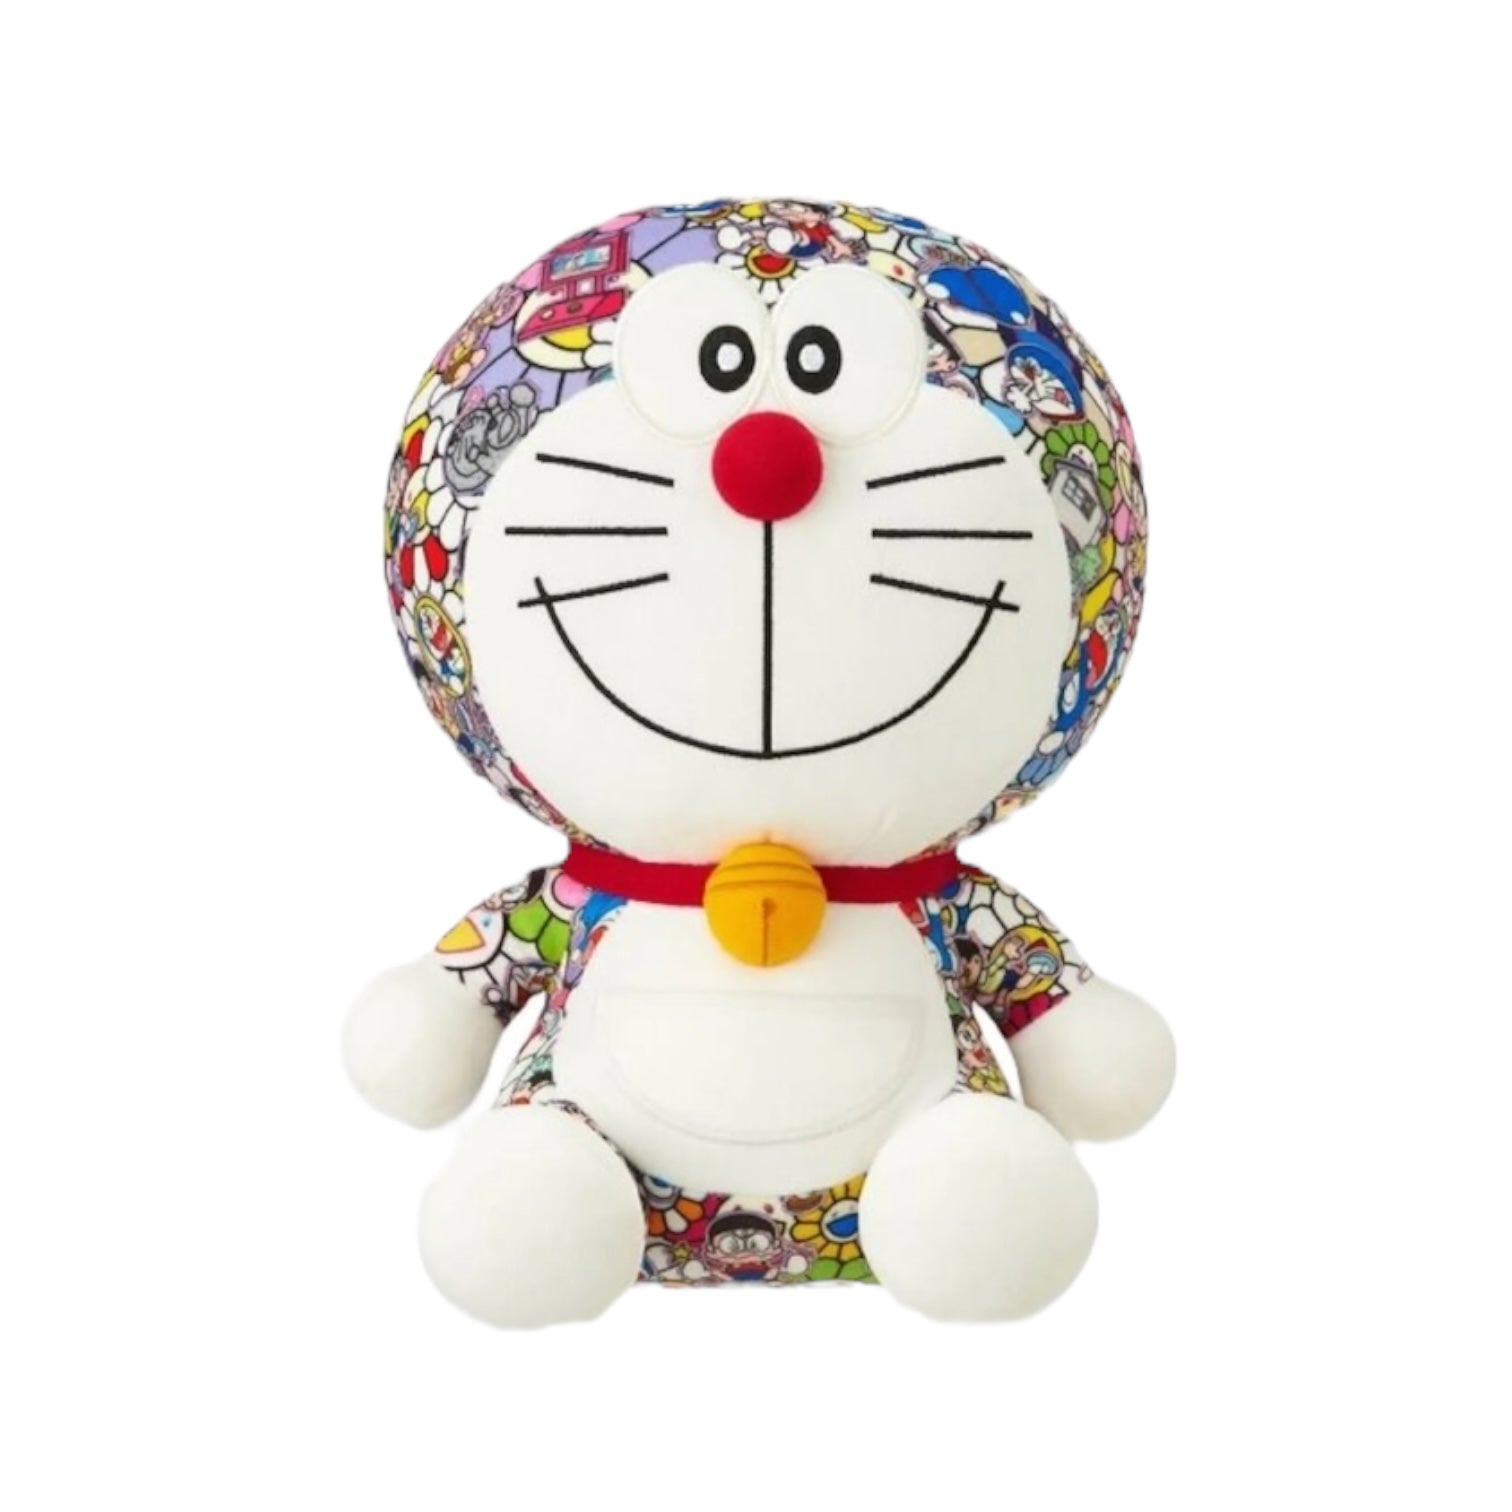 Uniqlo x Takashi Murakami x Doraemon Plush Toy